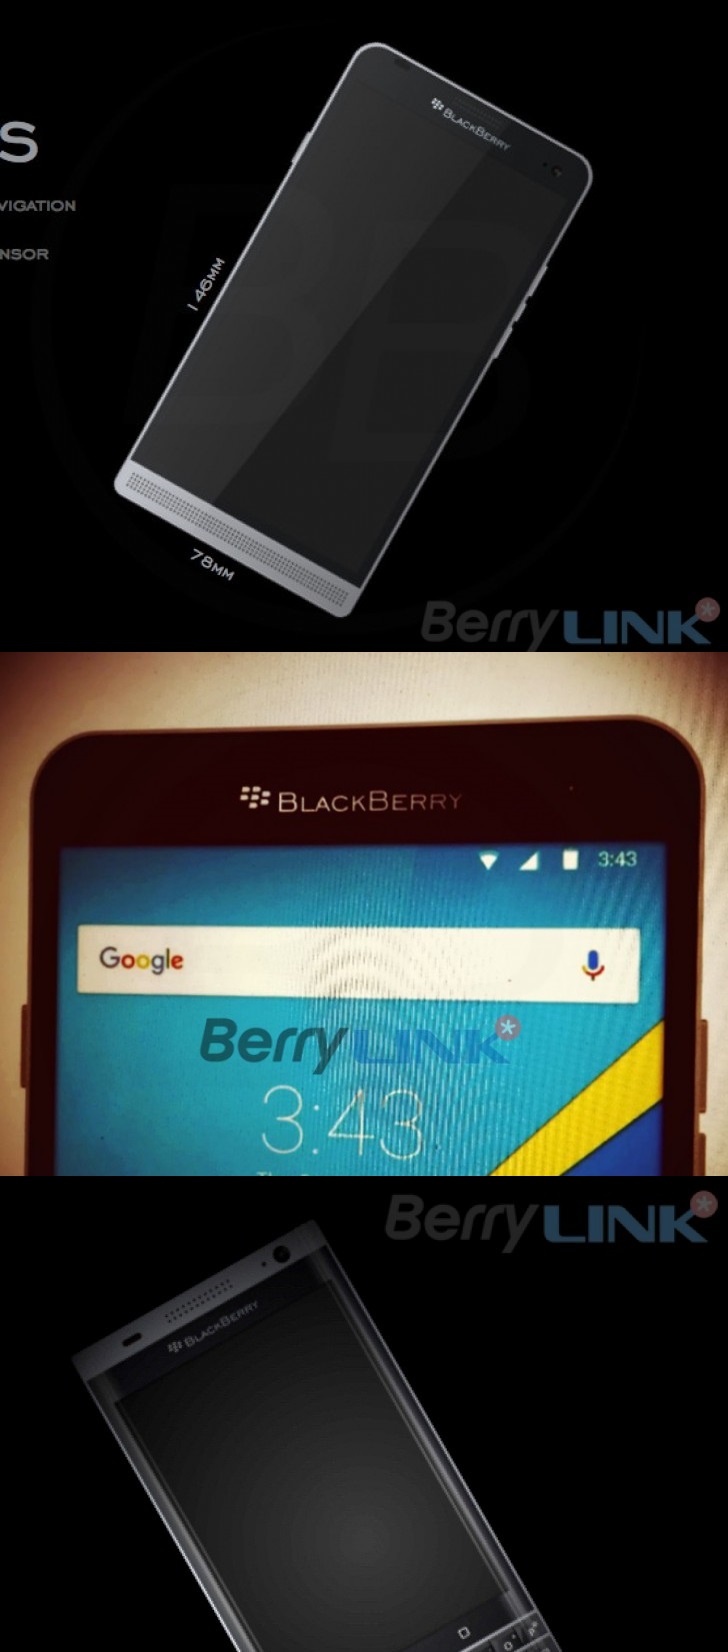 Dos prximos dispositivos BlackBerry con Android obtienen imgenes